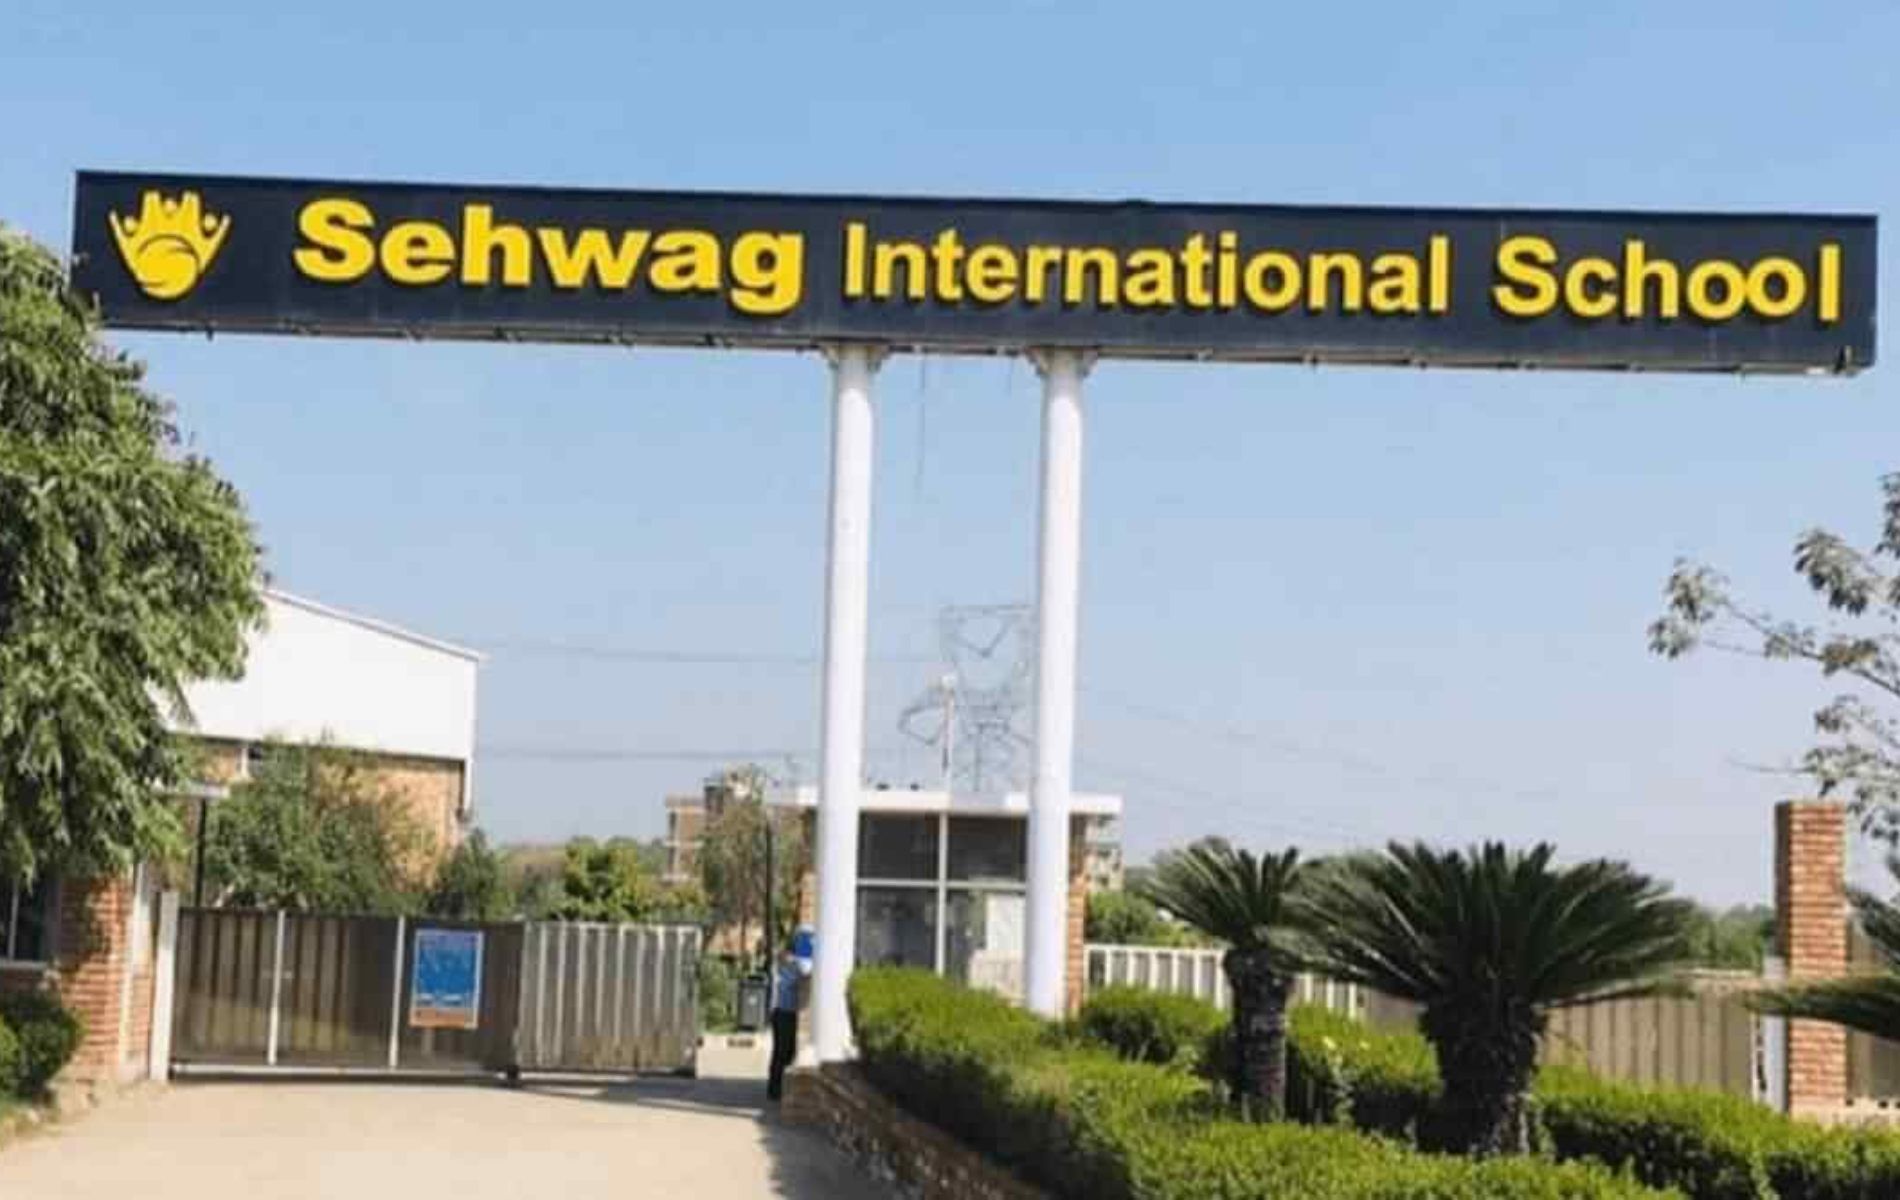 Sehwag International School, (Image - Twitter)